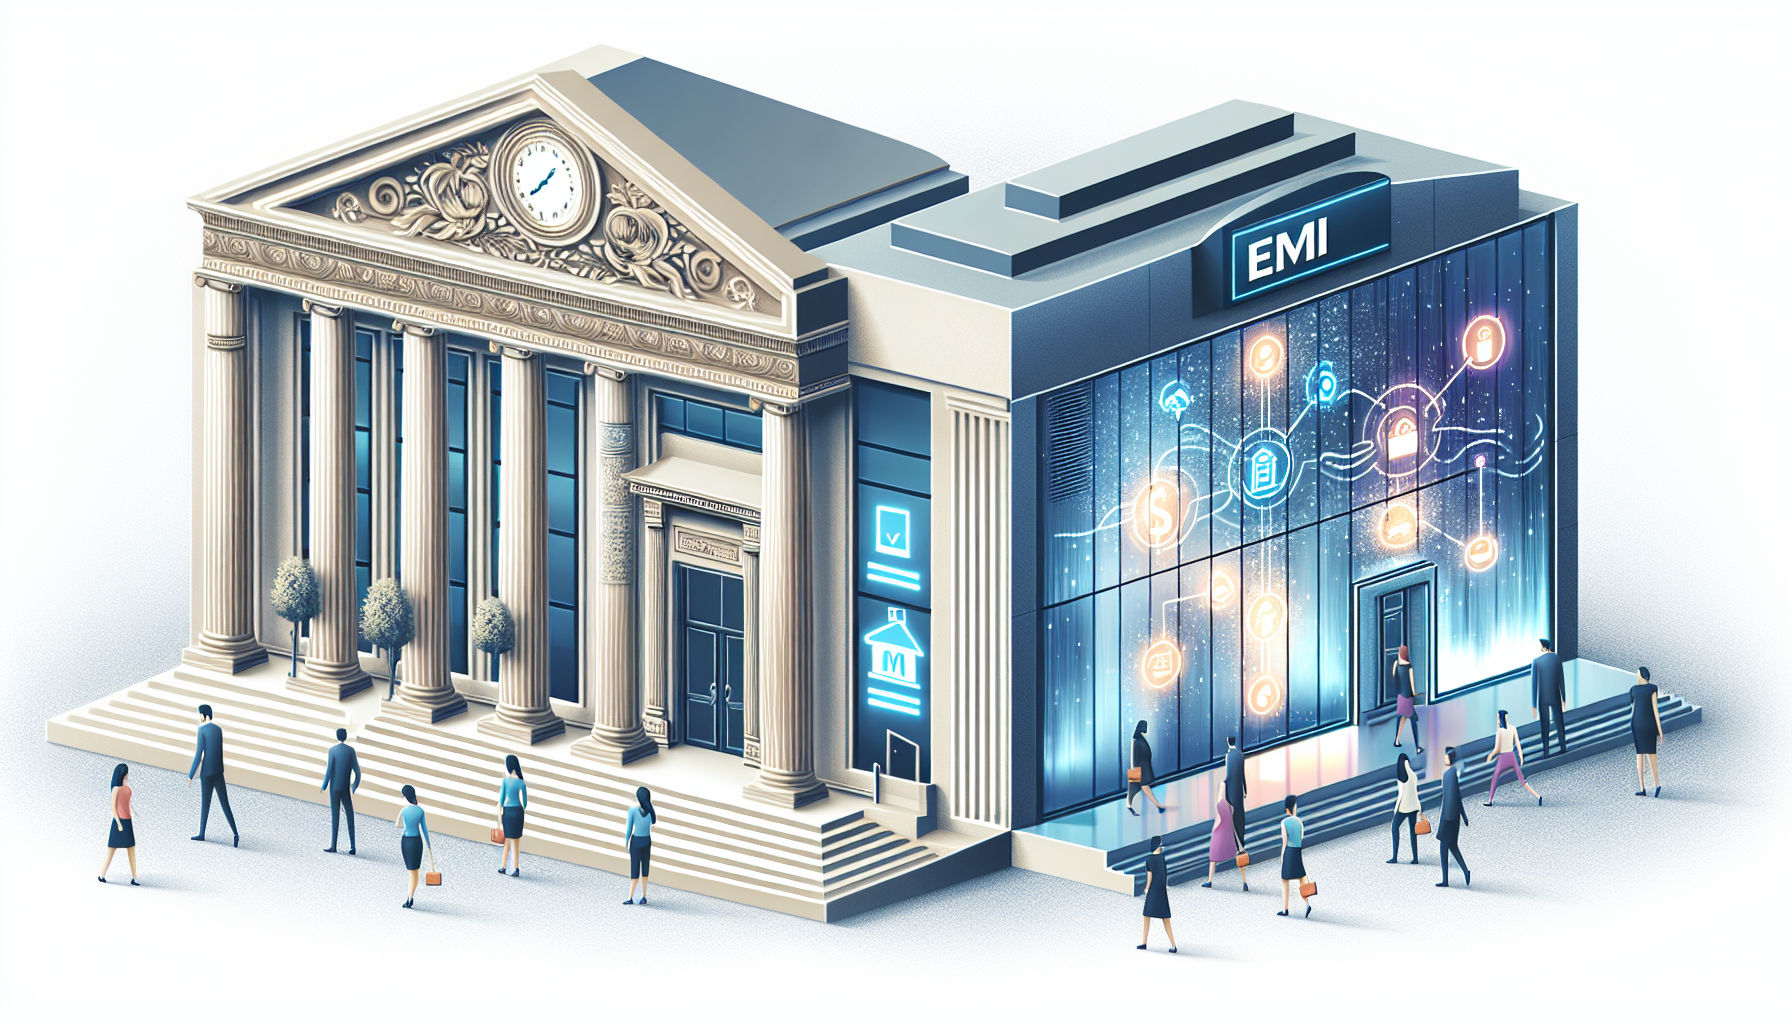 Ilustração comparando EMIs e bancos tradicionais